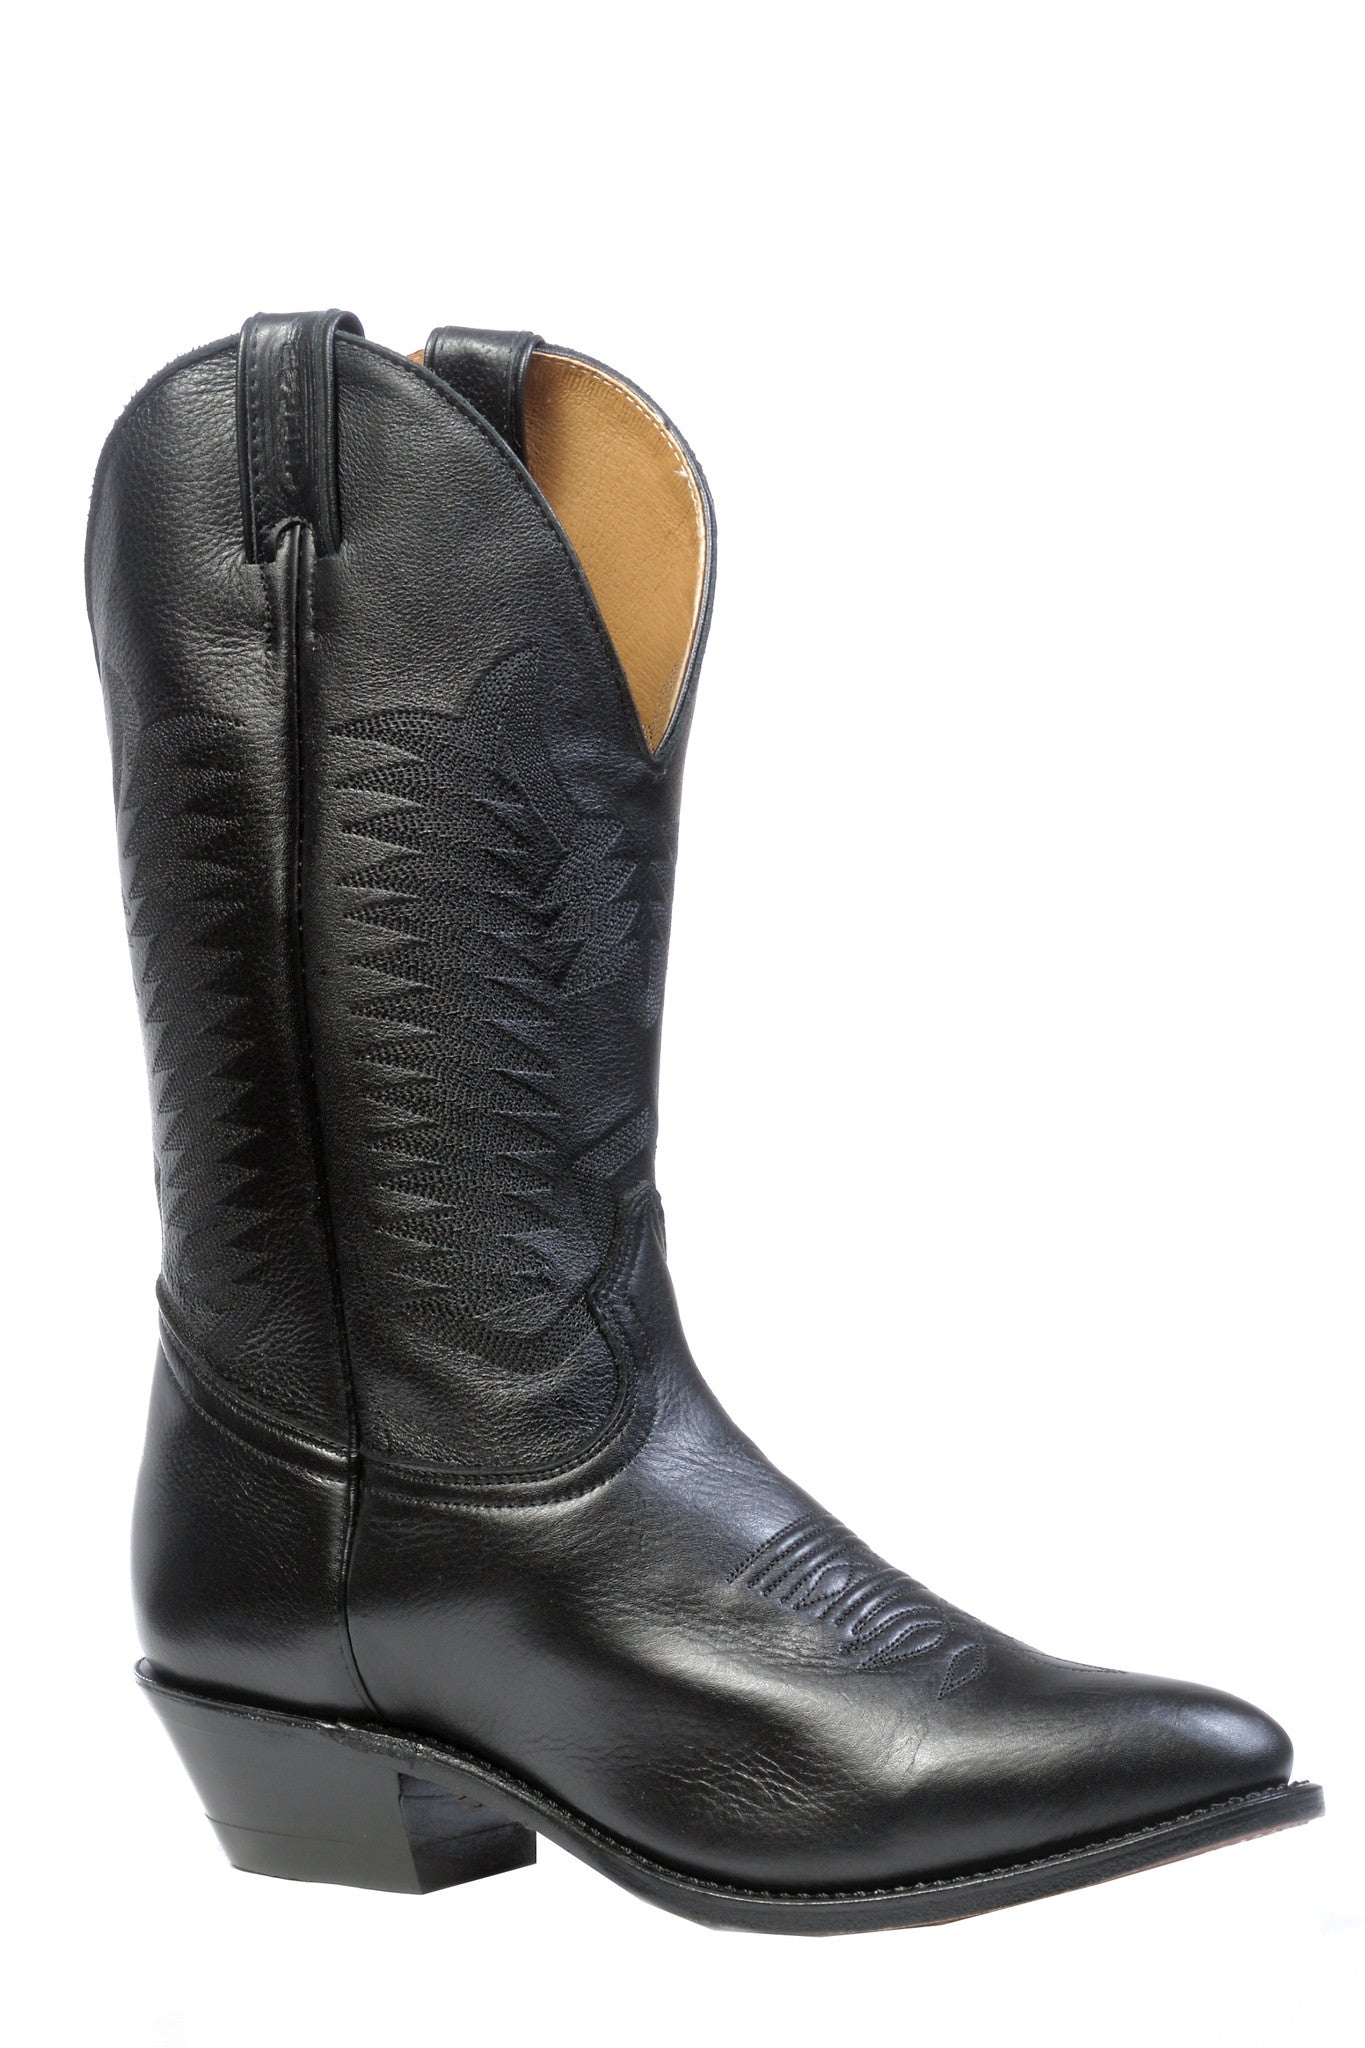 eee width cowboy boots